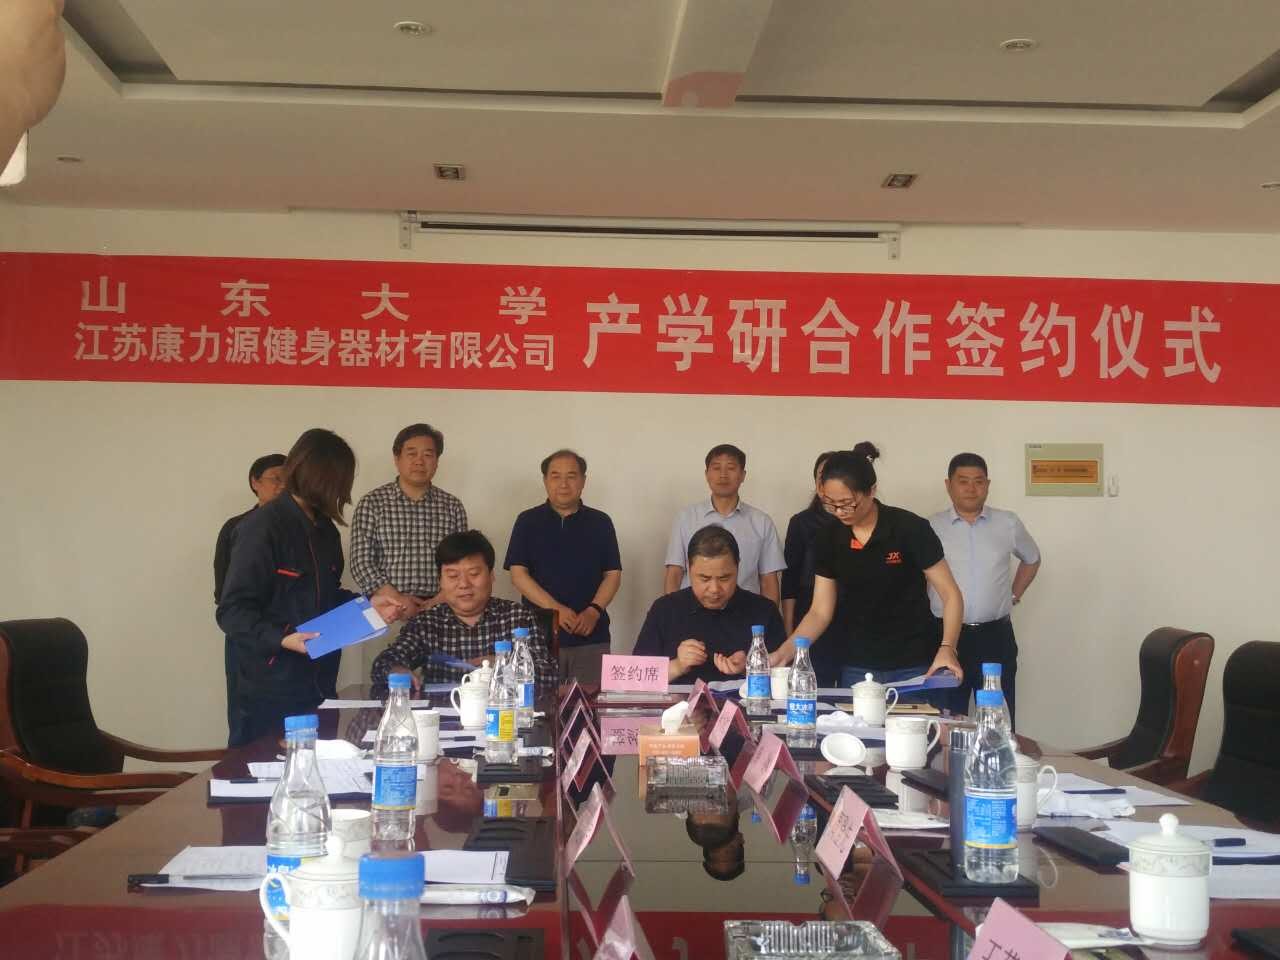 Gagnant gagnant académique et industriel / Jiangsu Junxia et l'Université de Shandong ont conclu une coopération stratégique